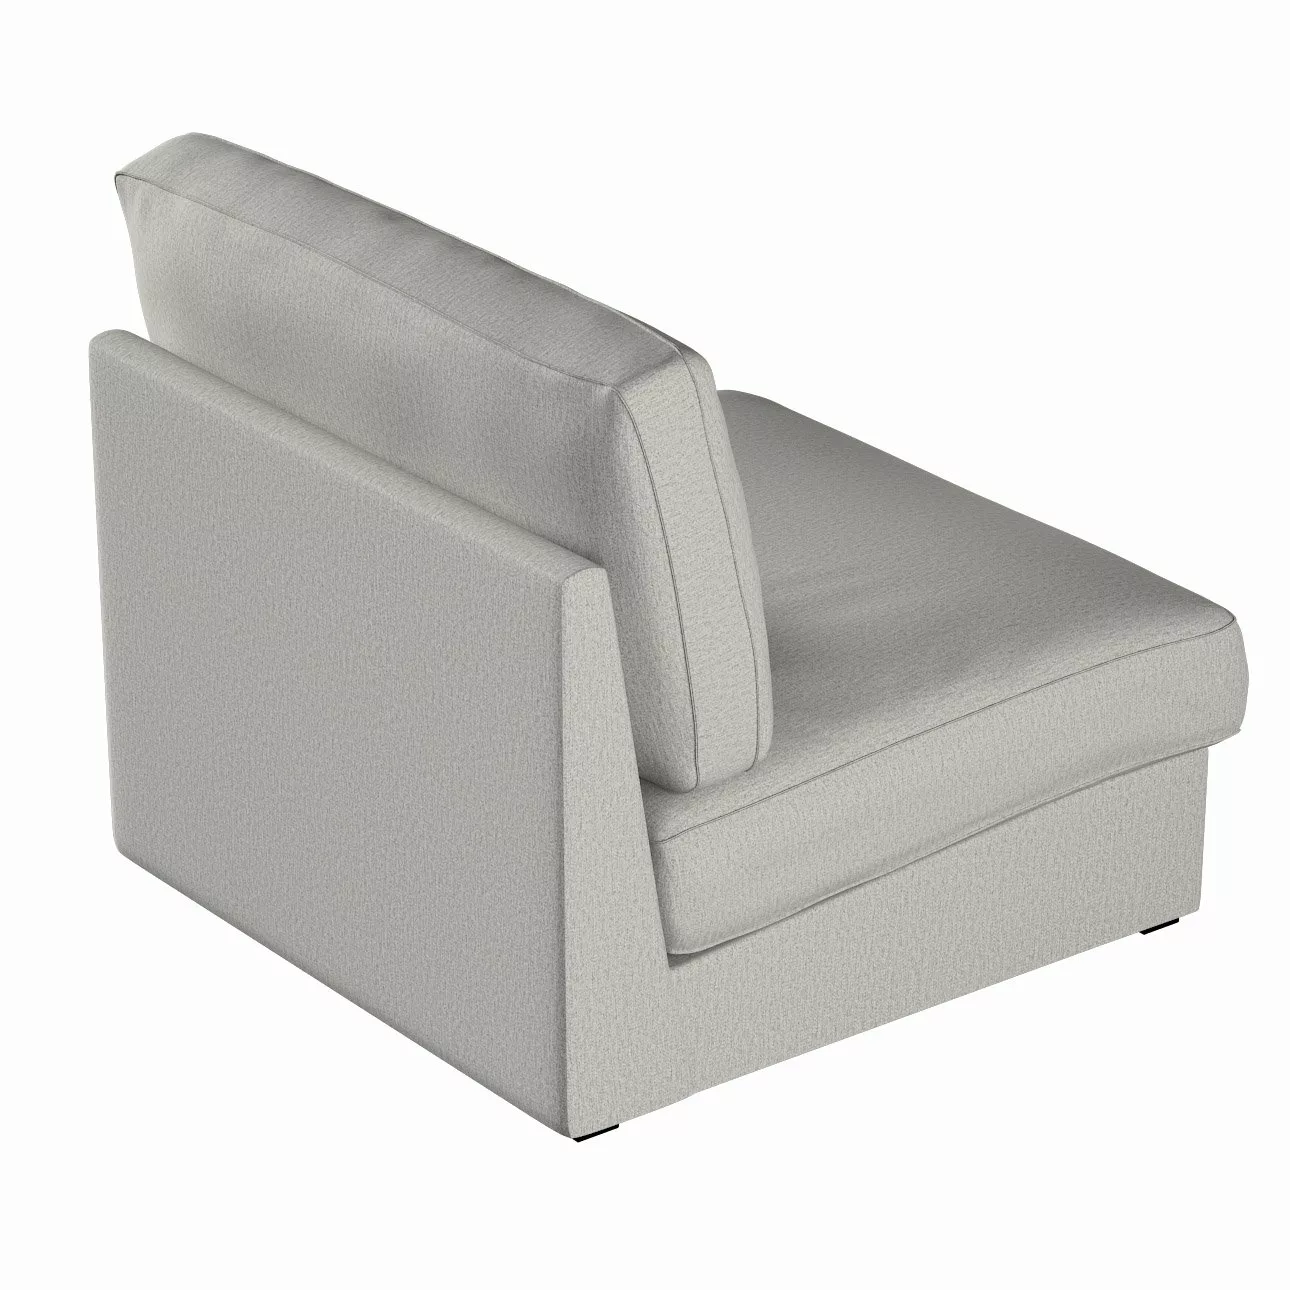 Bezug für Kivik Sessel nicht ausklappbar, grau-beige, Bezug für Sessel Kivi günstig online kaufen